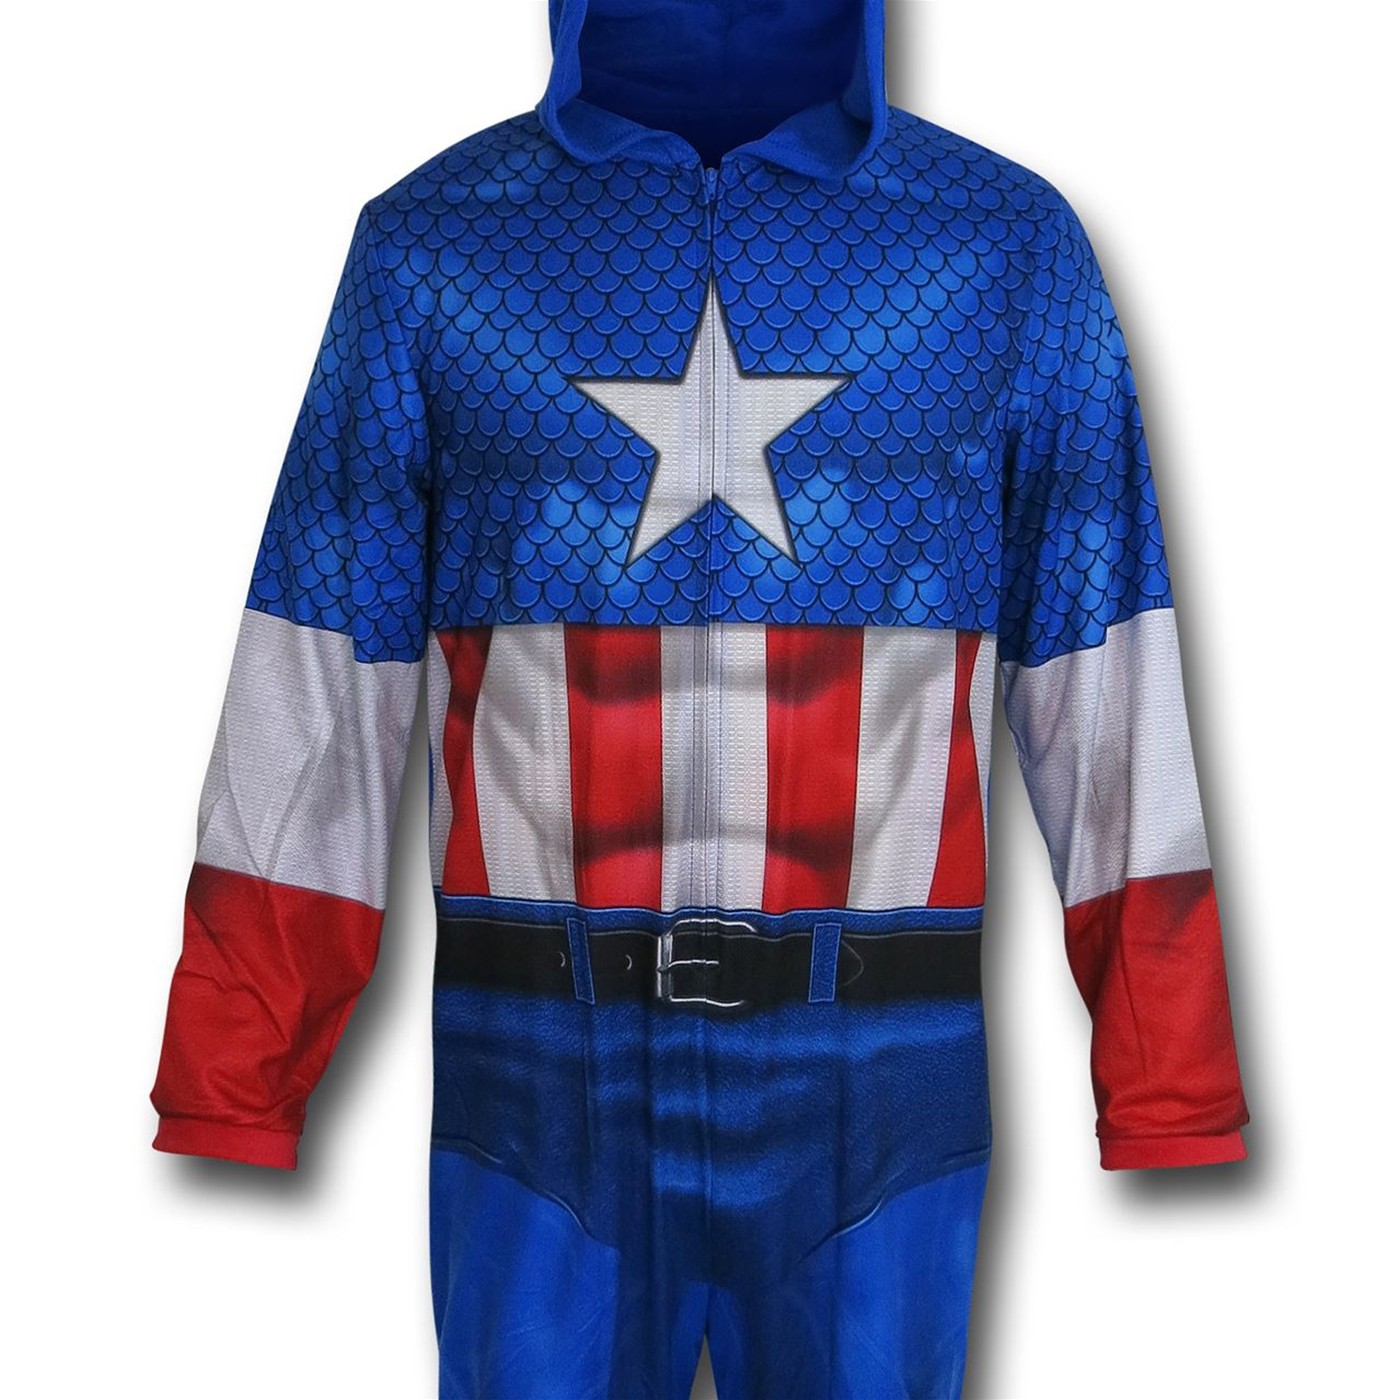 Captain America Sublimated Union Suit